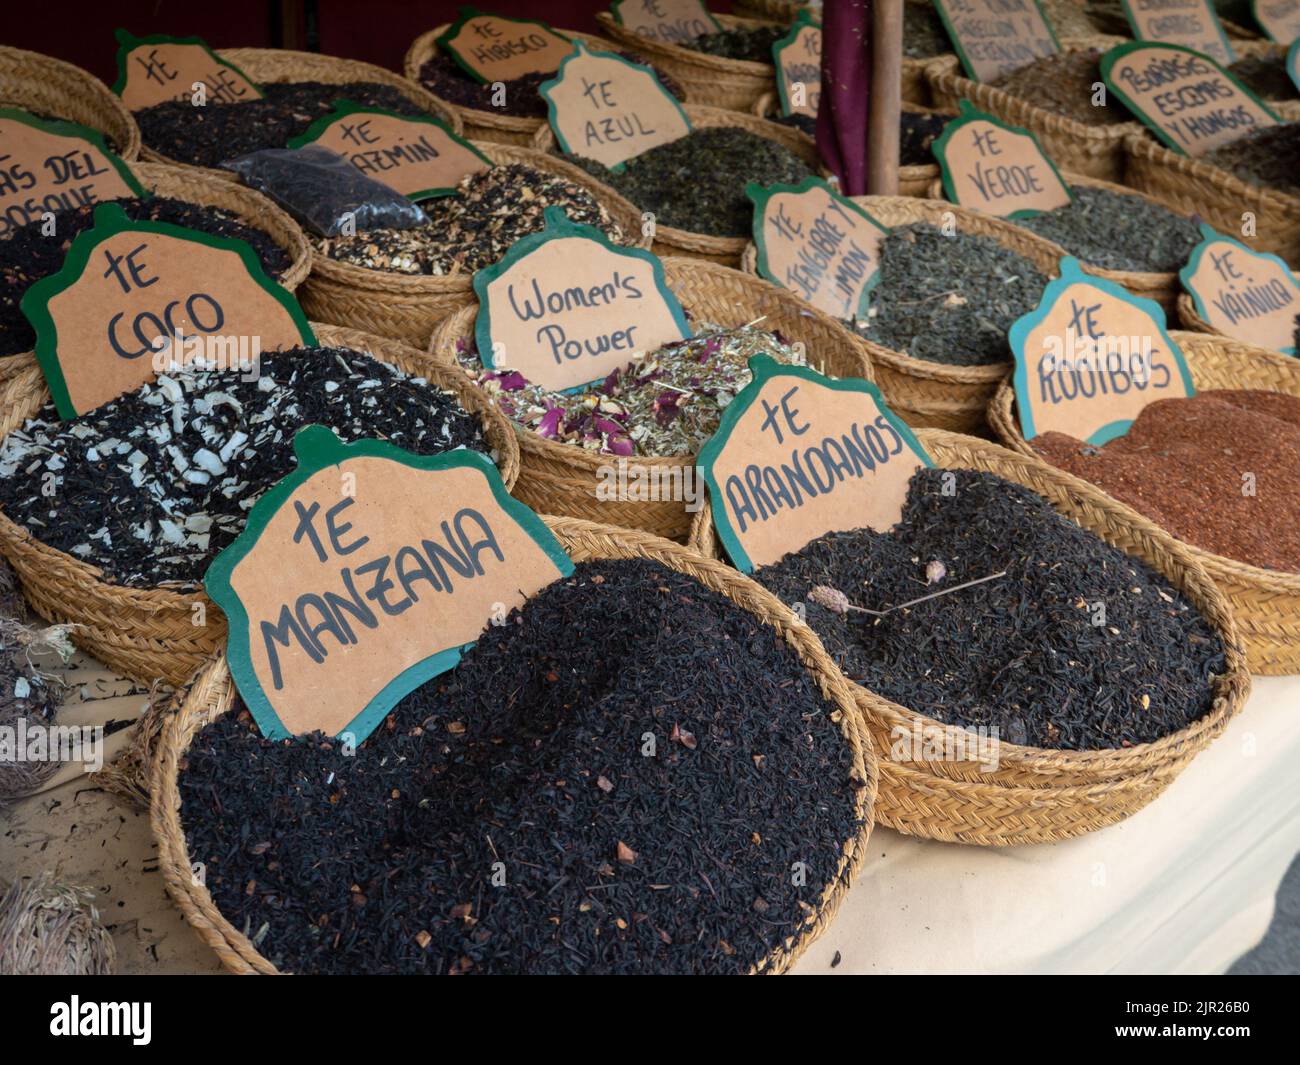 MONDONEDO, SPAGNA - 14 AGOSTO 2022: Miscele di tè nei cestini con etichette spagnole presso il bancone della fiera medievale nel centro storico di Mondonedo, Lugo, Galici Foto Stock